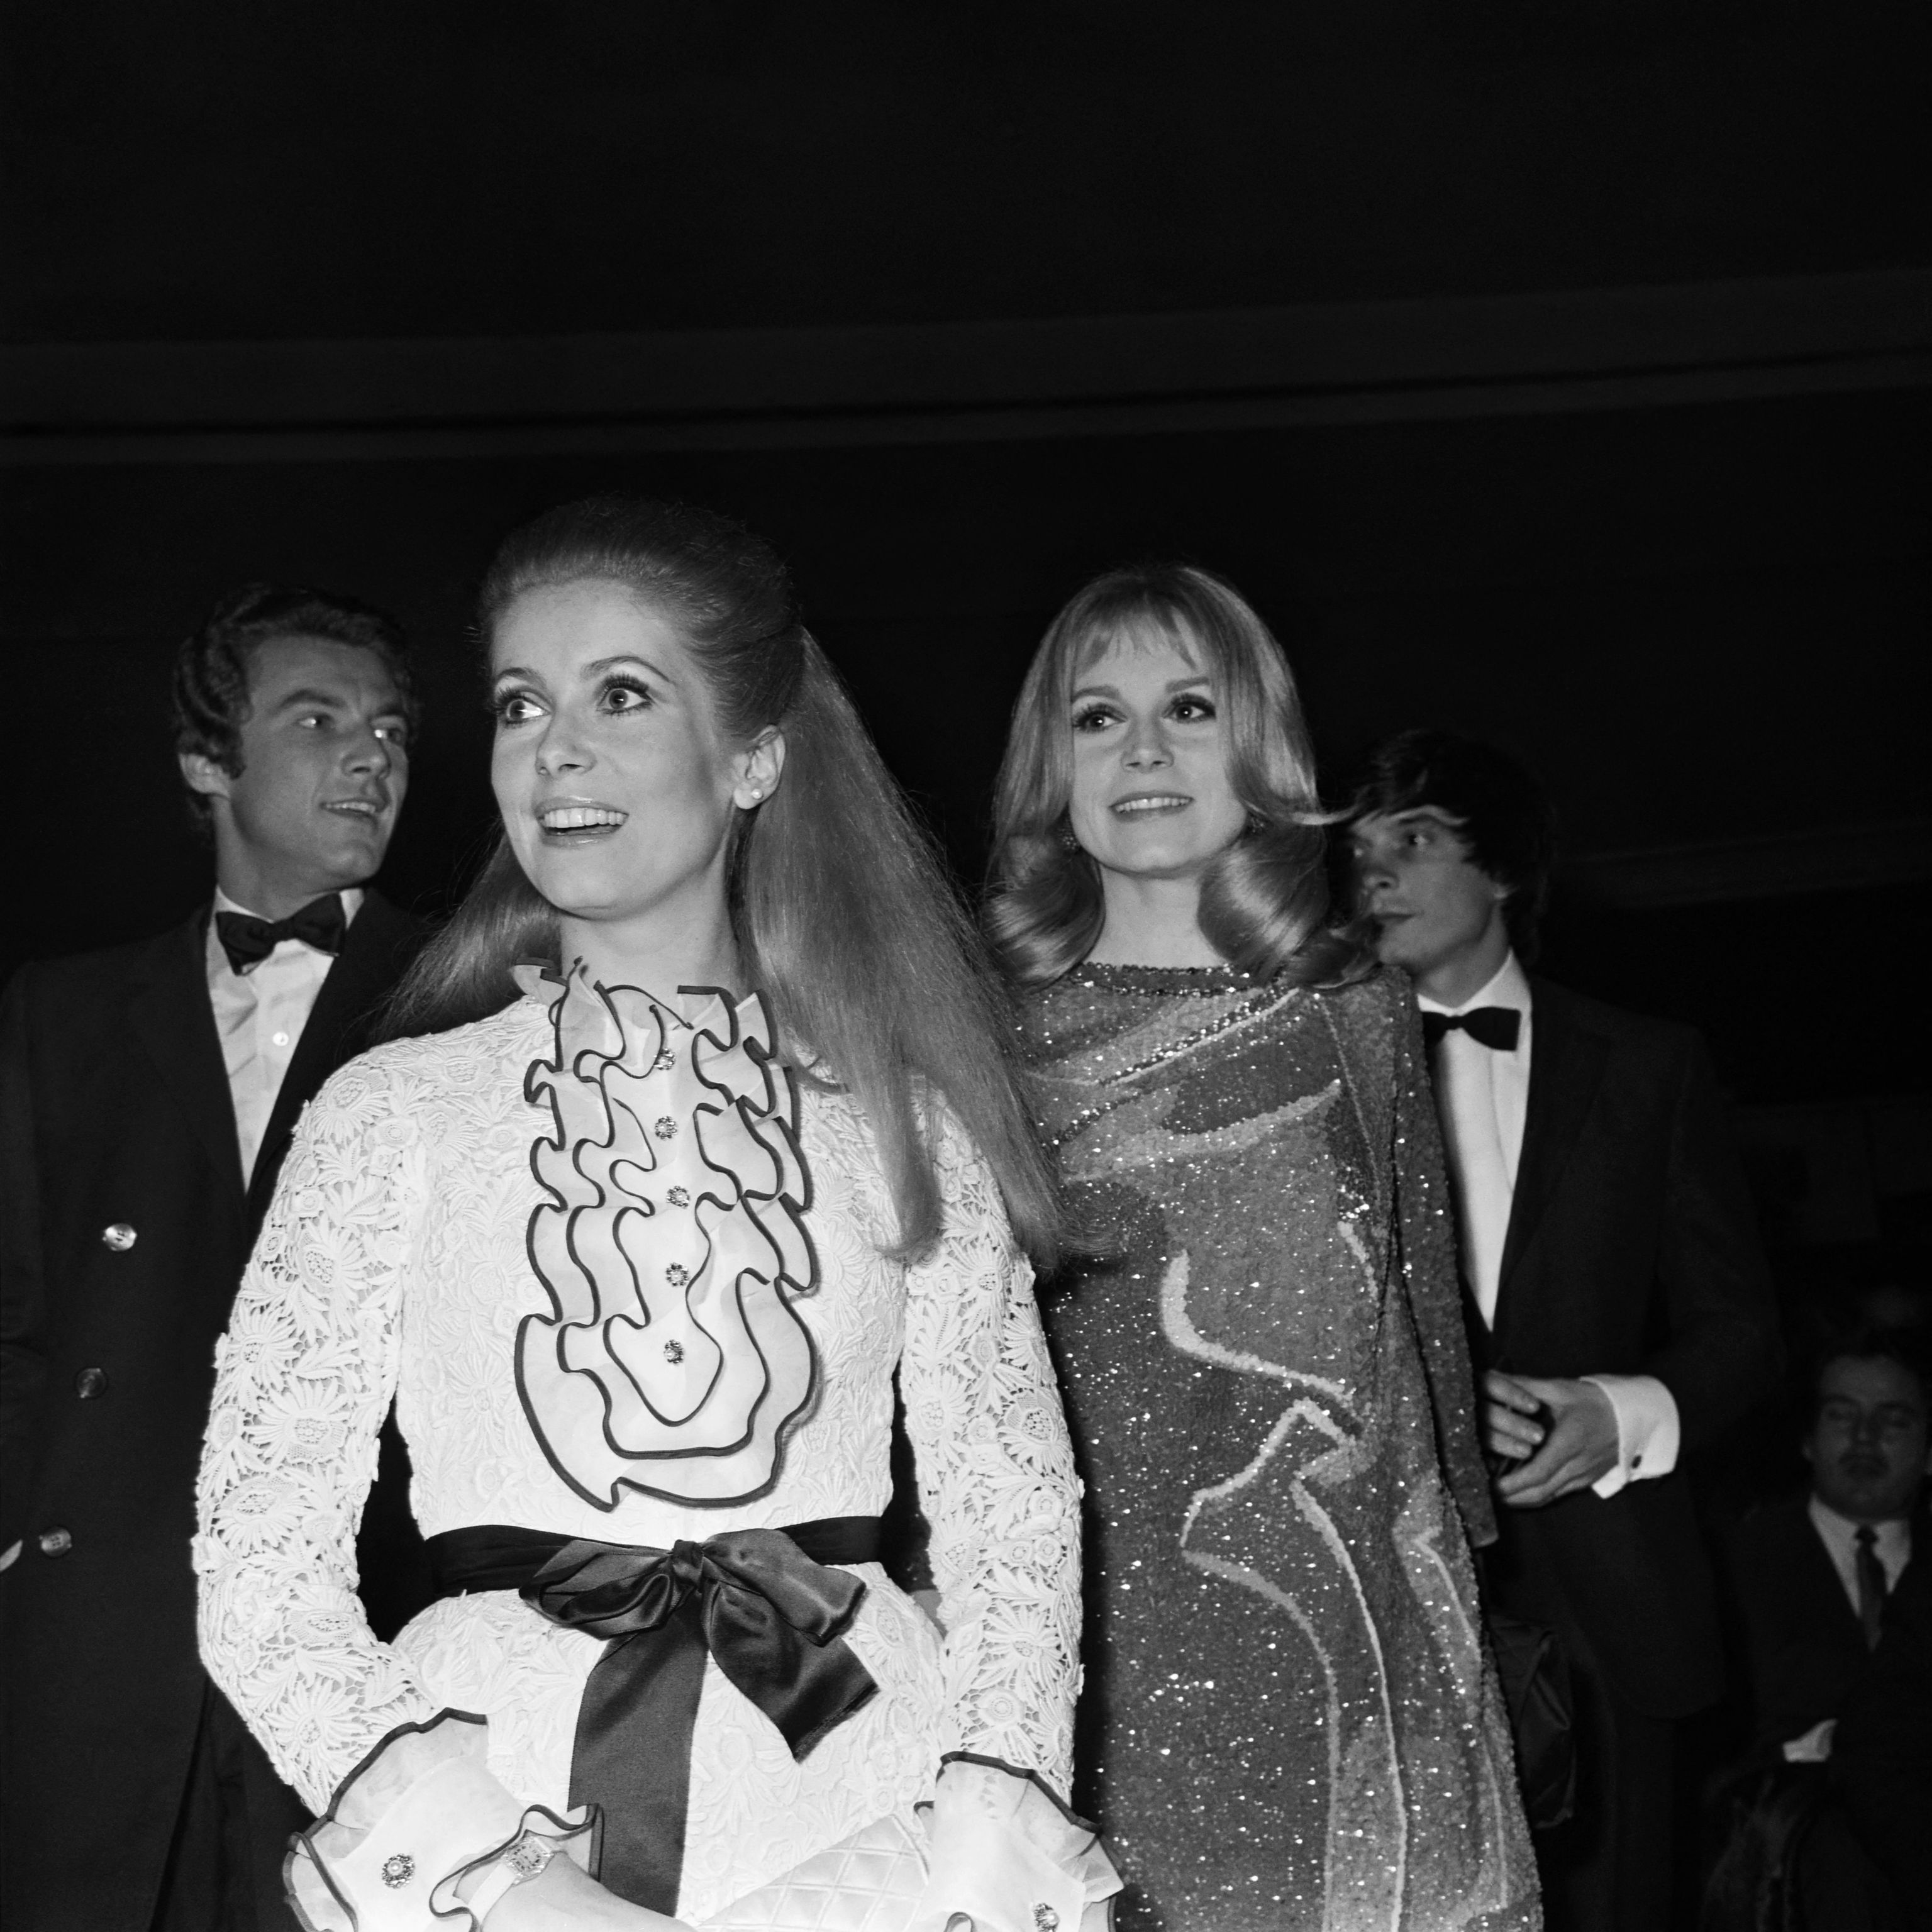 Catherine Deneuve y su hermana, Fran�oise Dorleac, en el estreno en 1967 de 'Les Demoiselles de Rochefort'.